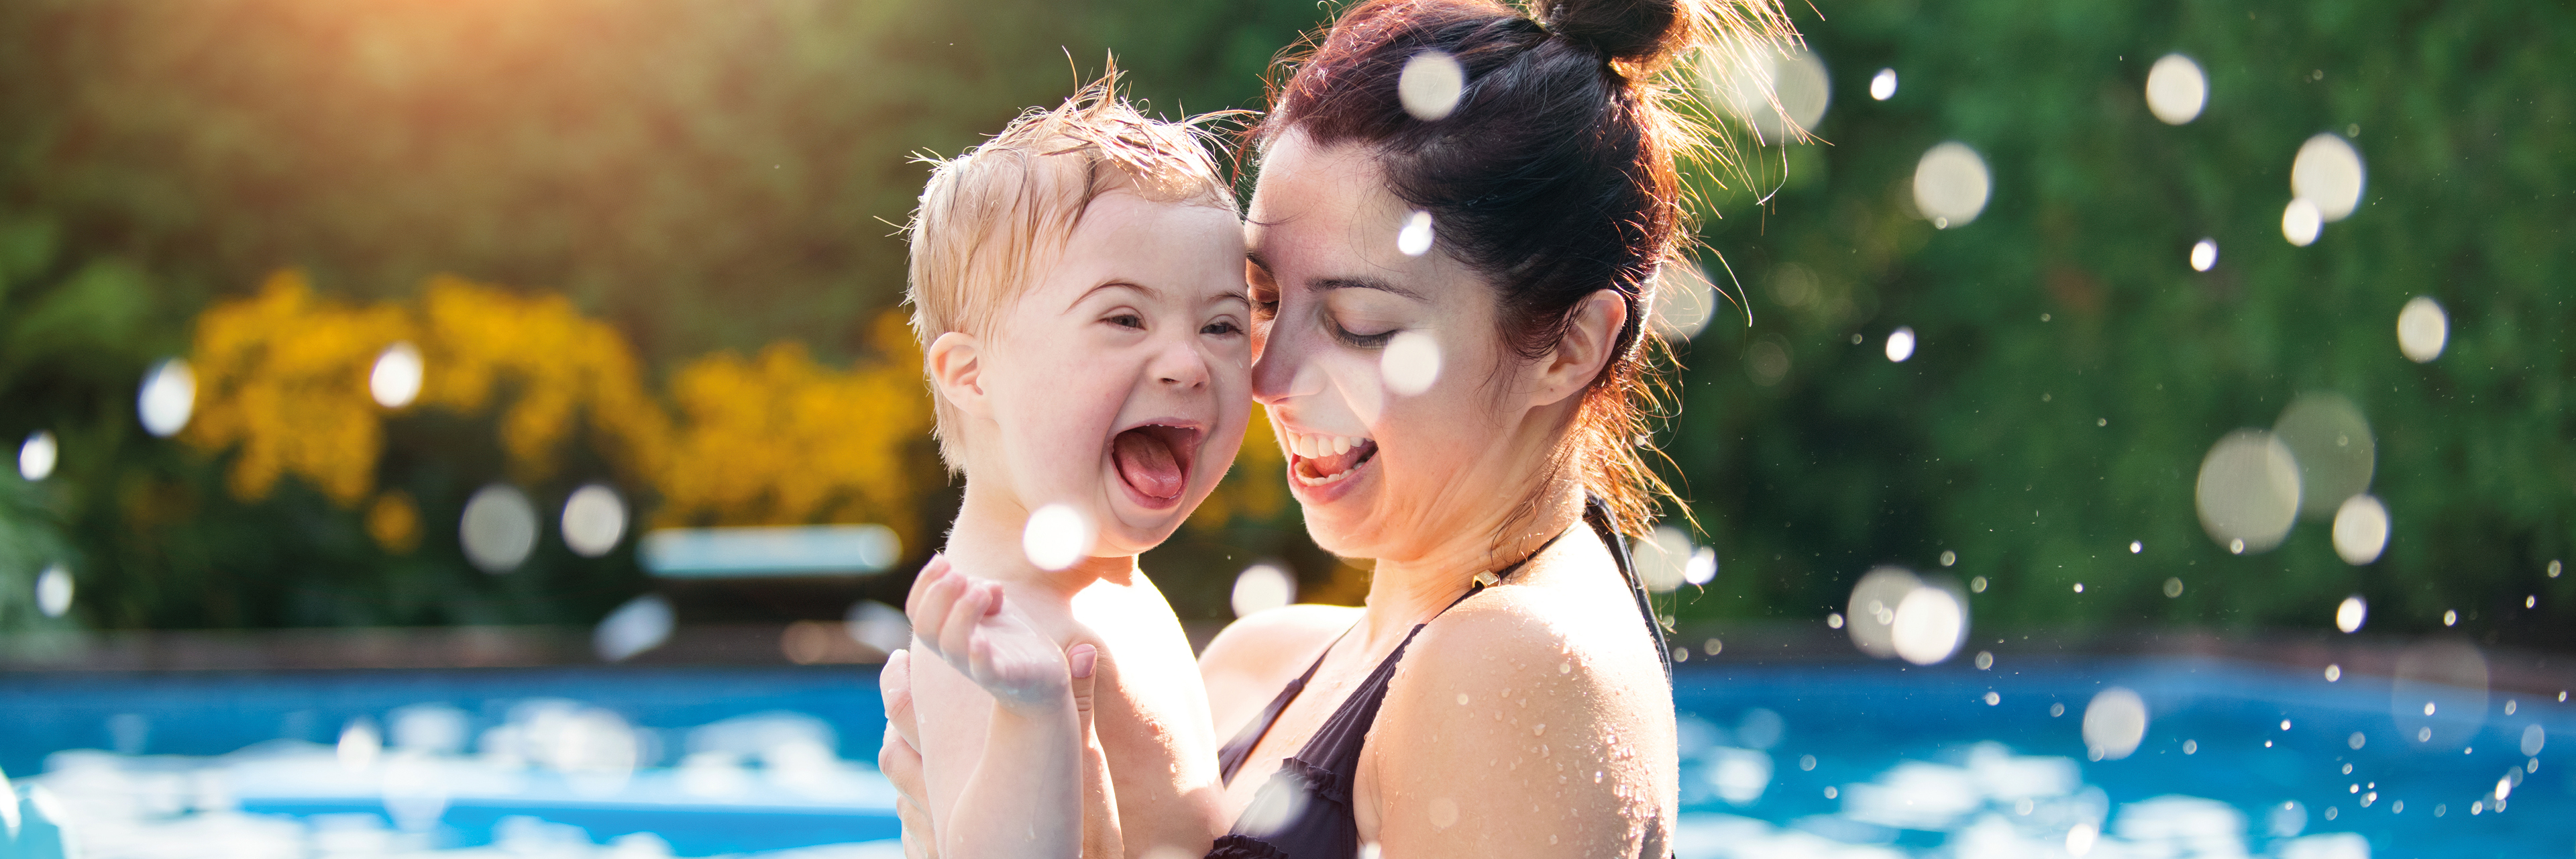 Vrouw en kind met syndroom van Down genieten in het zwembad.